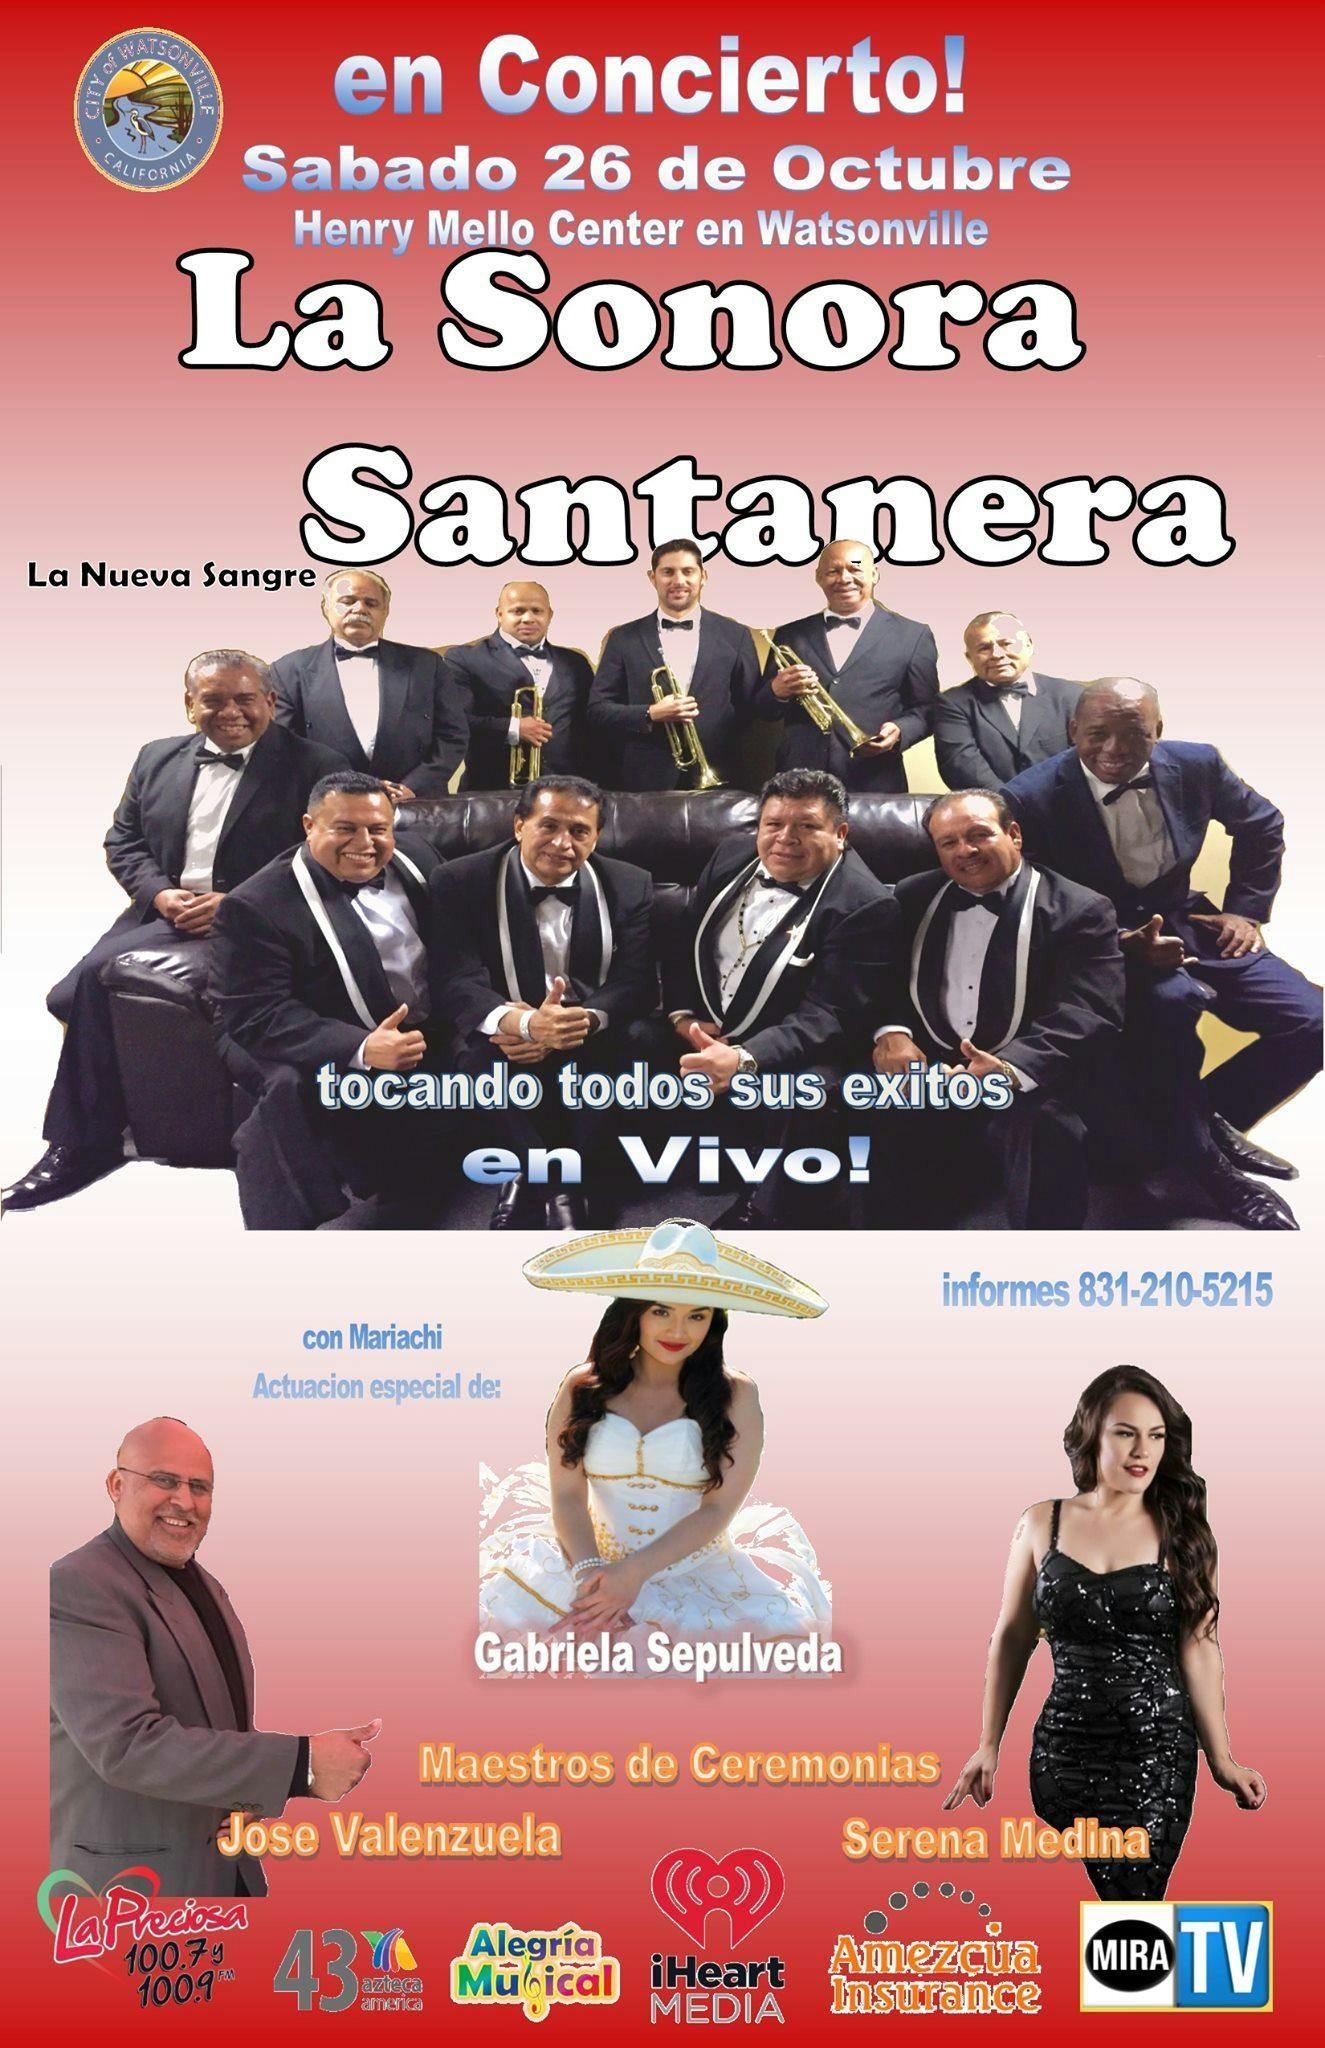 La Sonora Santanera en Concierto - 26 OCT 2019